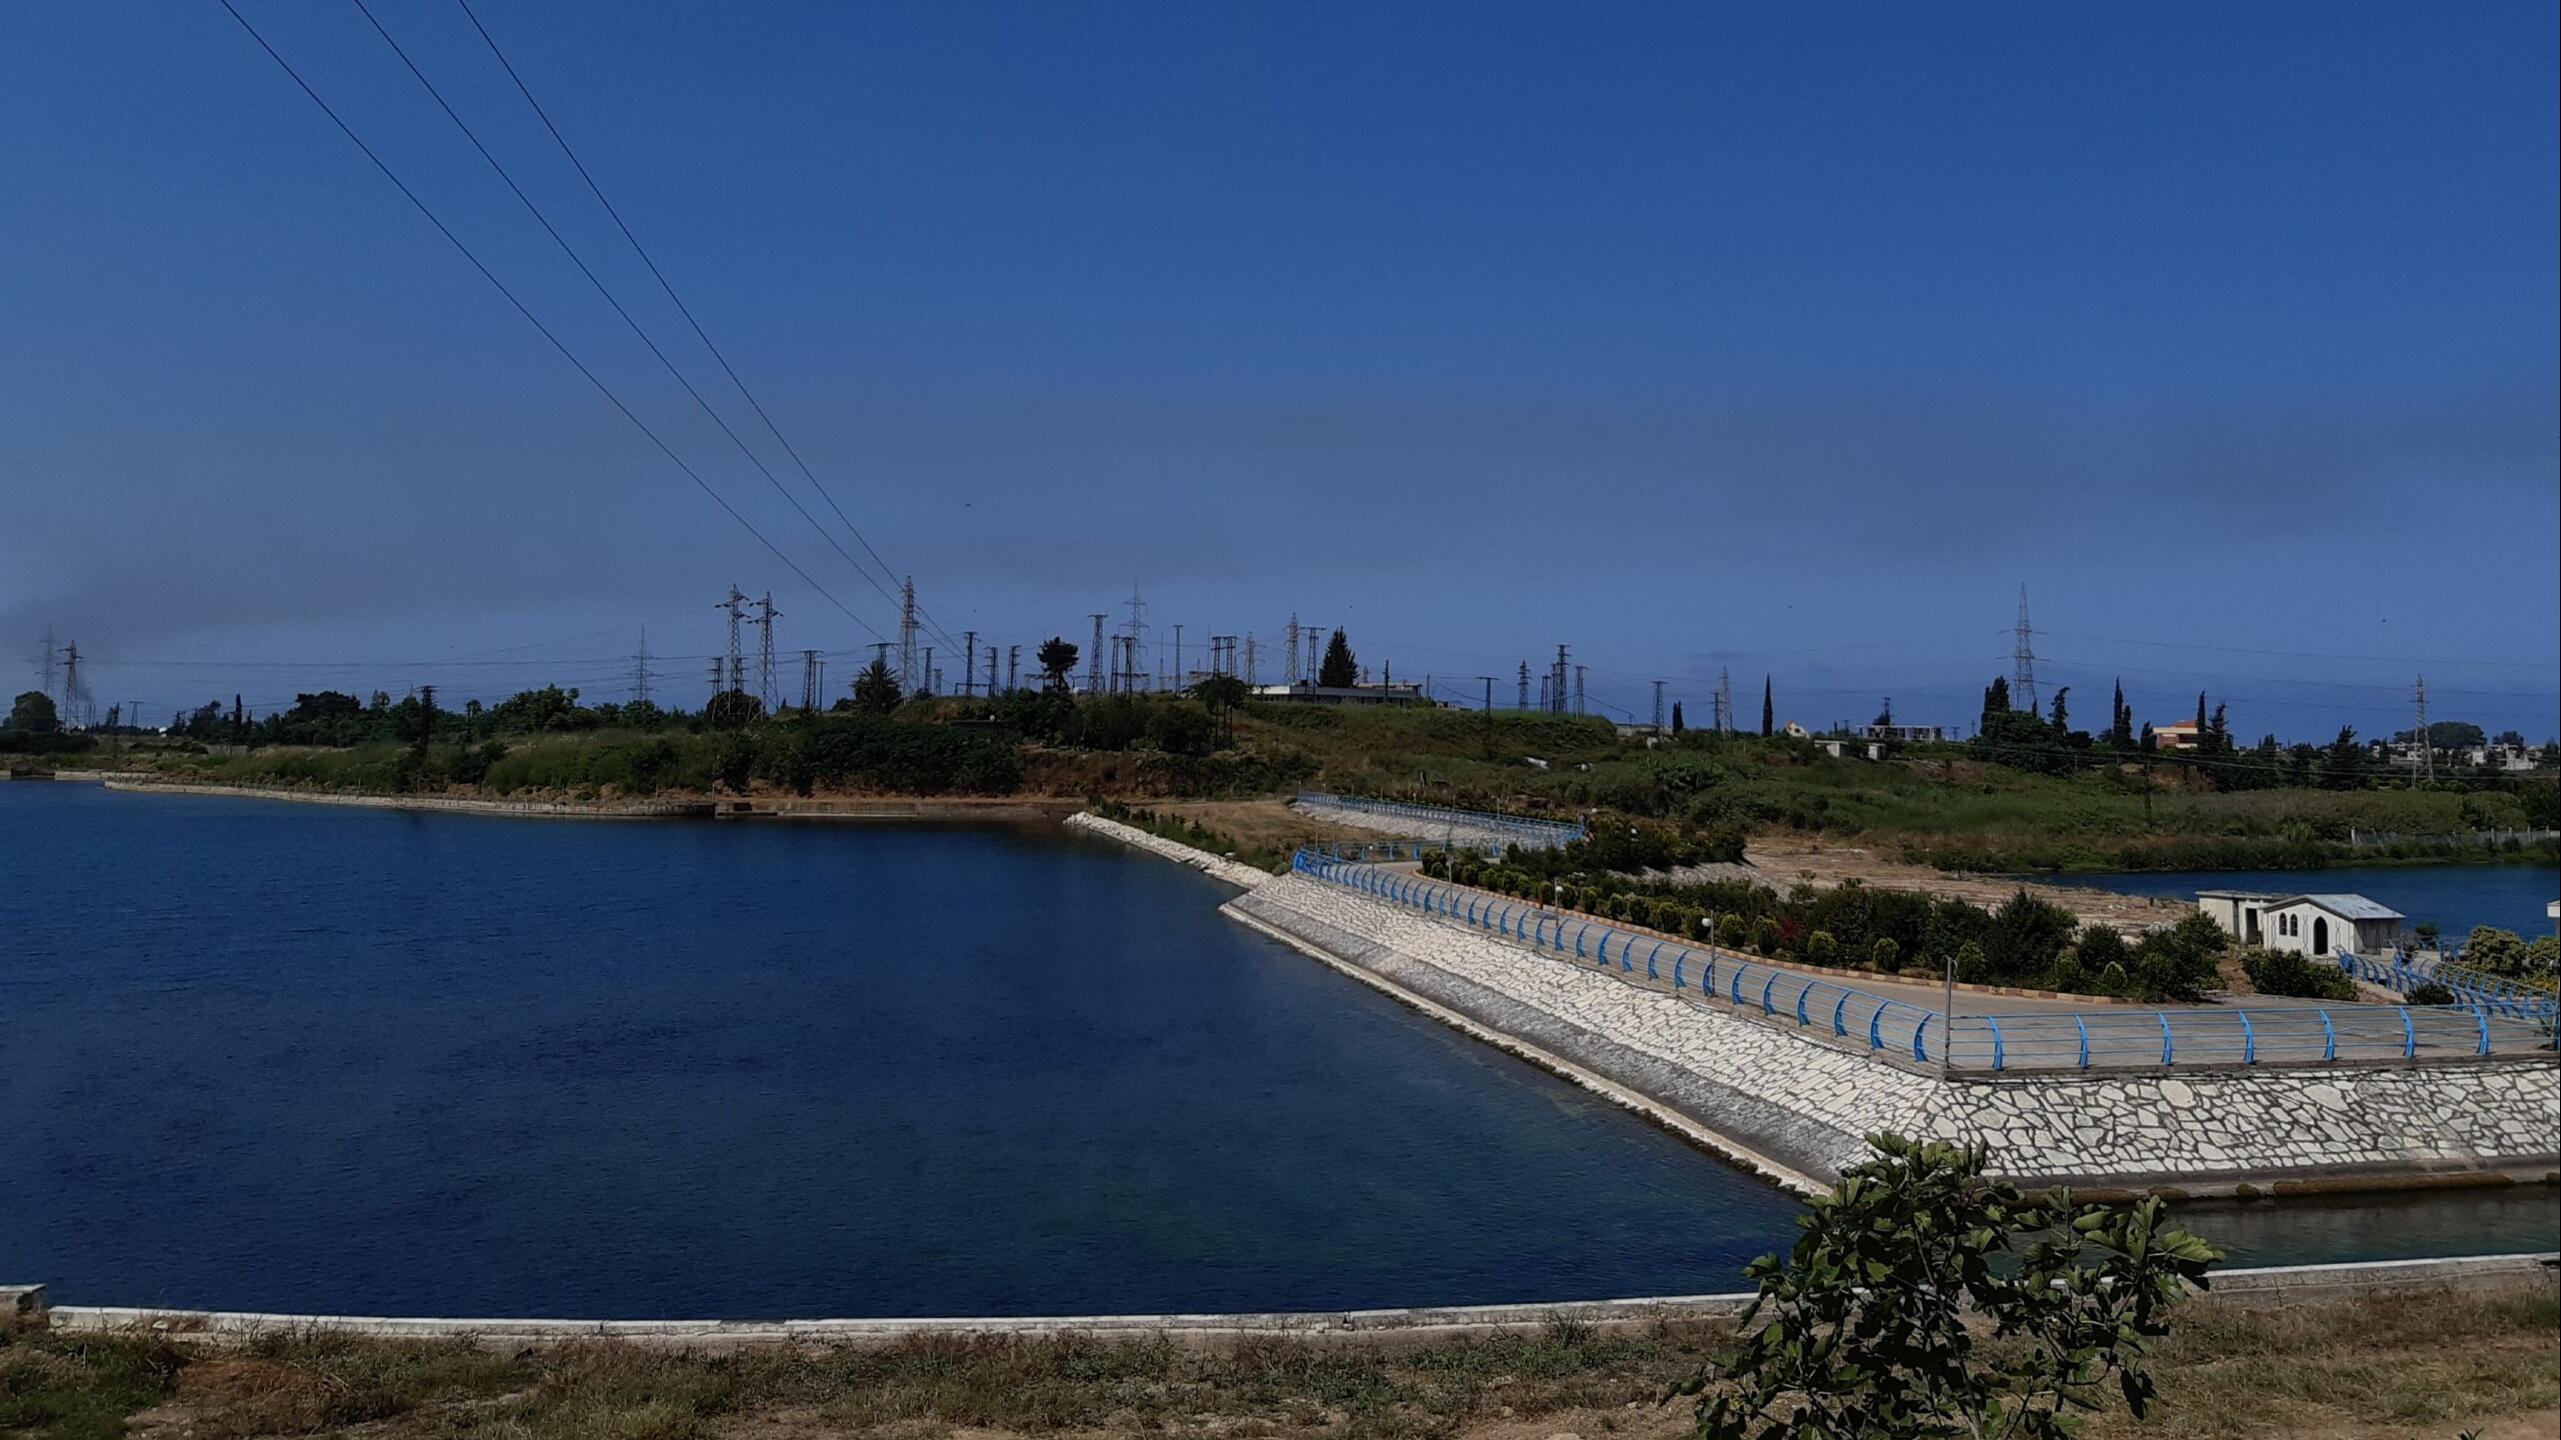 معوقات تواجه واقع المياه في ريف اللاذقية، وخطط لحلها